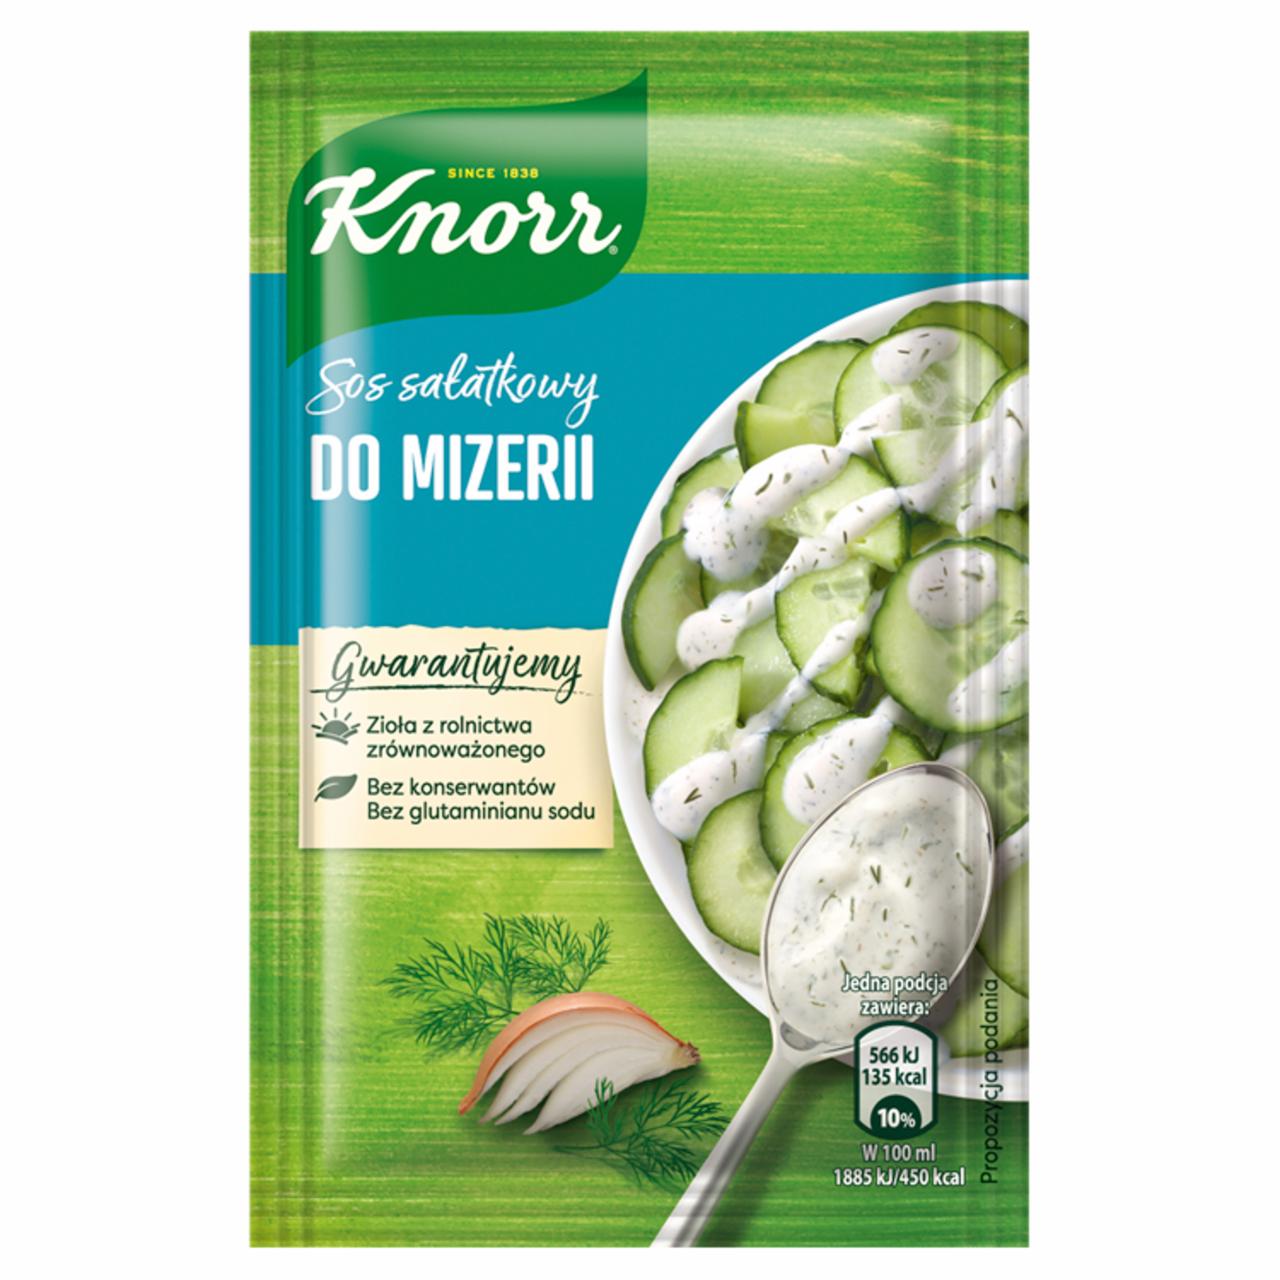 Zdjęcia - Knorr Sos sałatkowy do mizerii 10 g